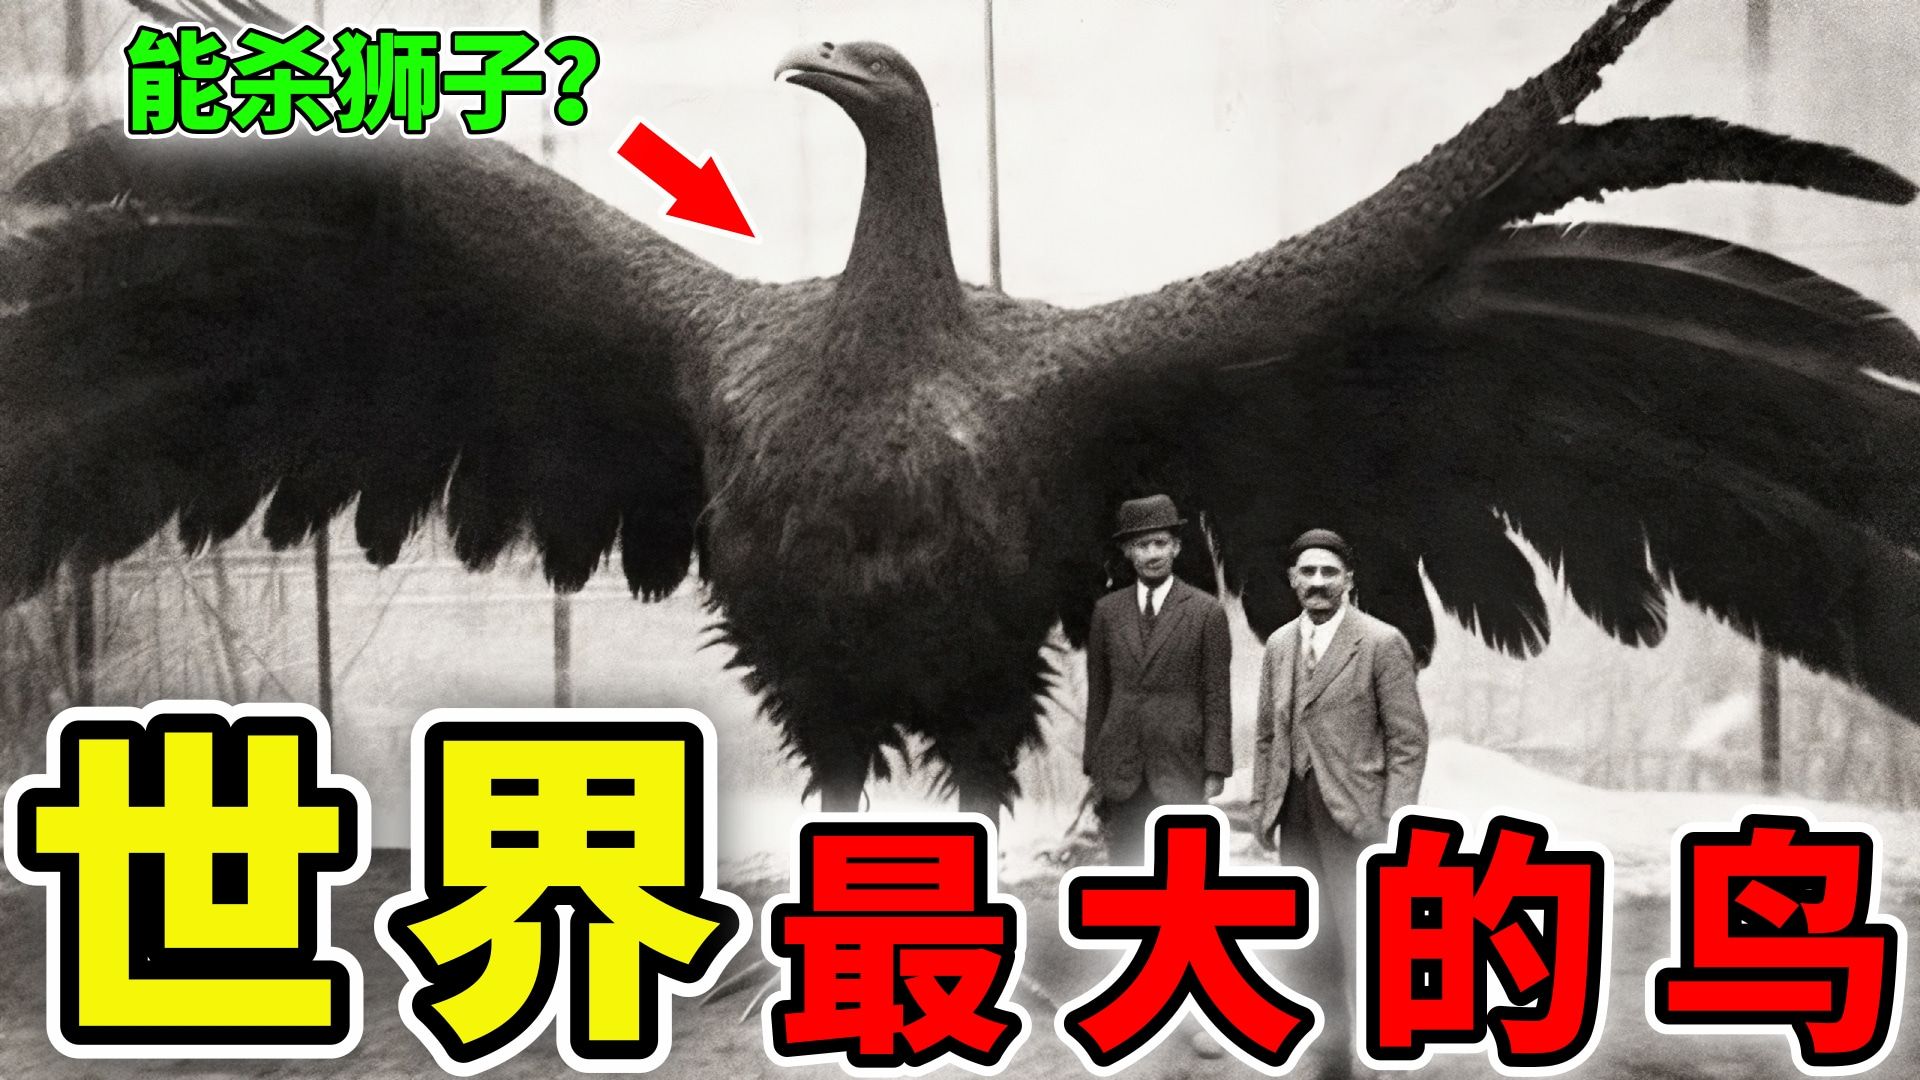 世界上最古老的鸟图片